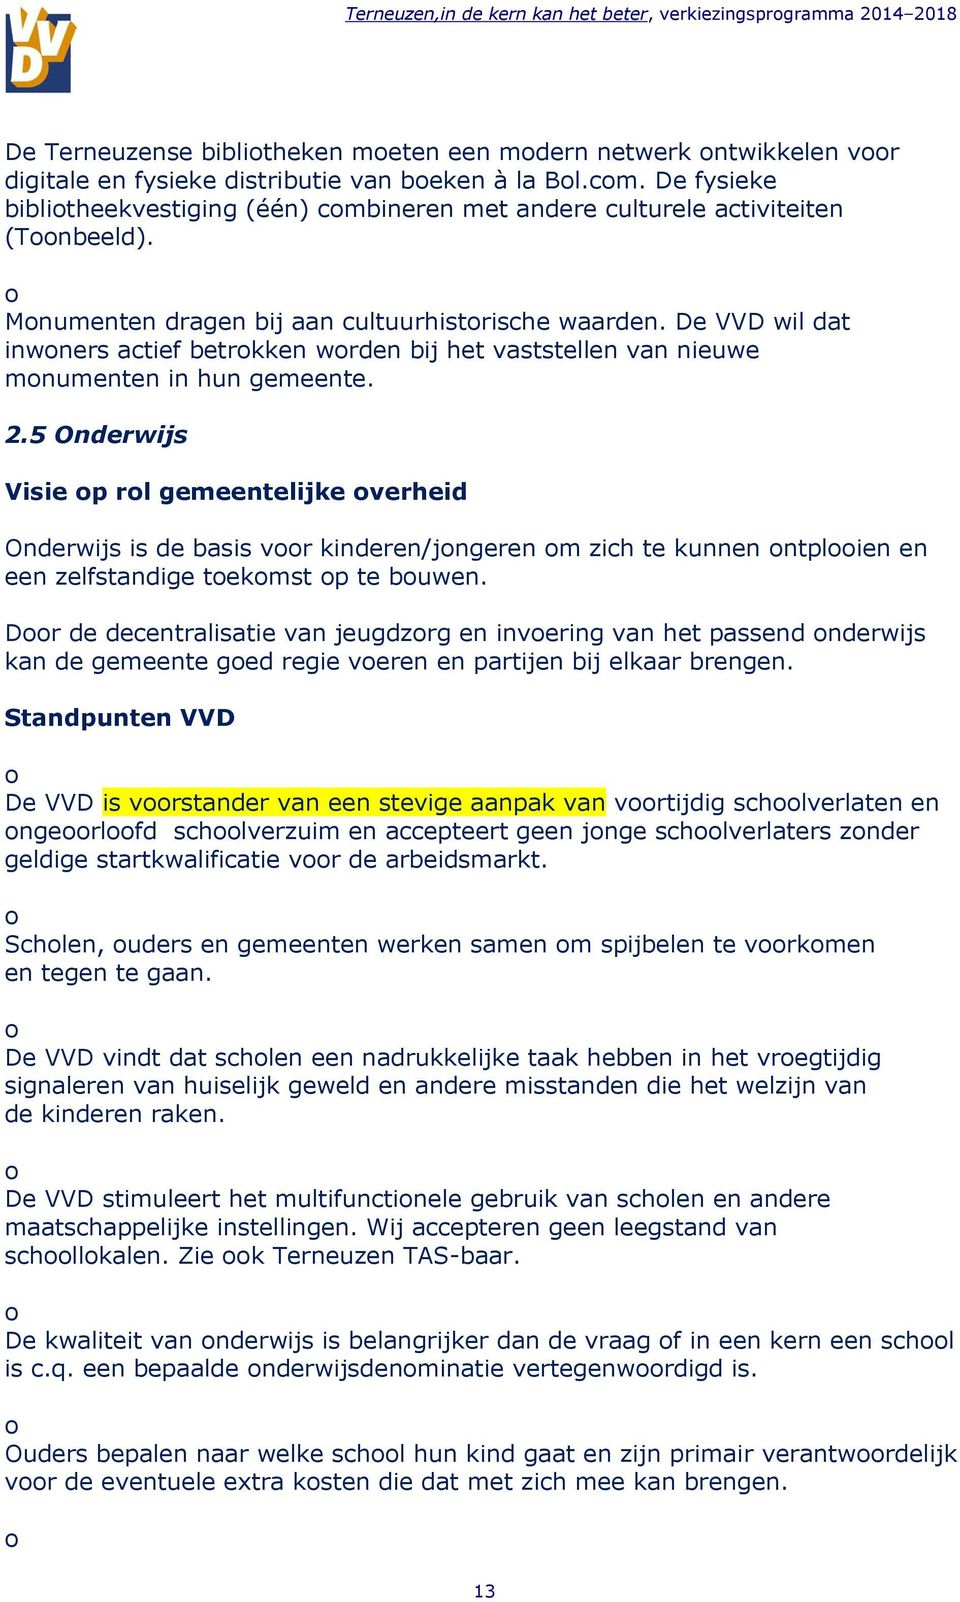 De VVD wil dat inwners actief betrkken wrden bij het vaststellen van nieuwe mnumenten in hun gemeente. 2.